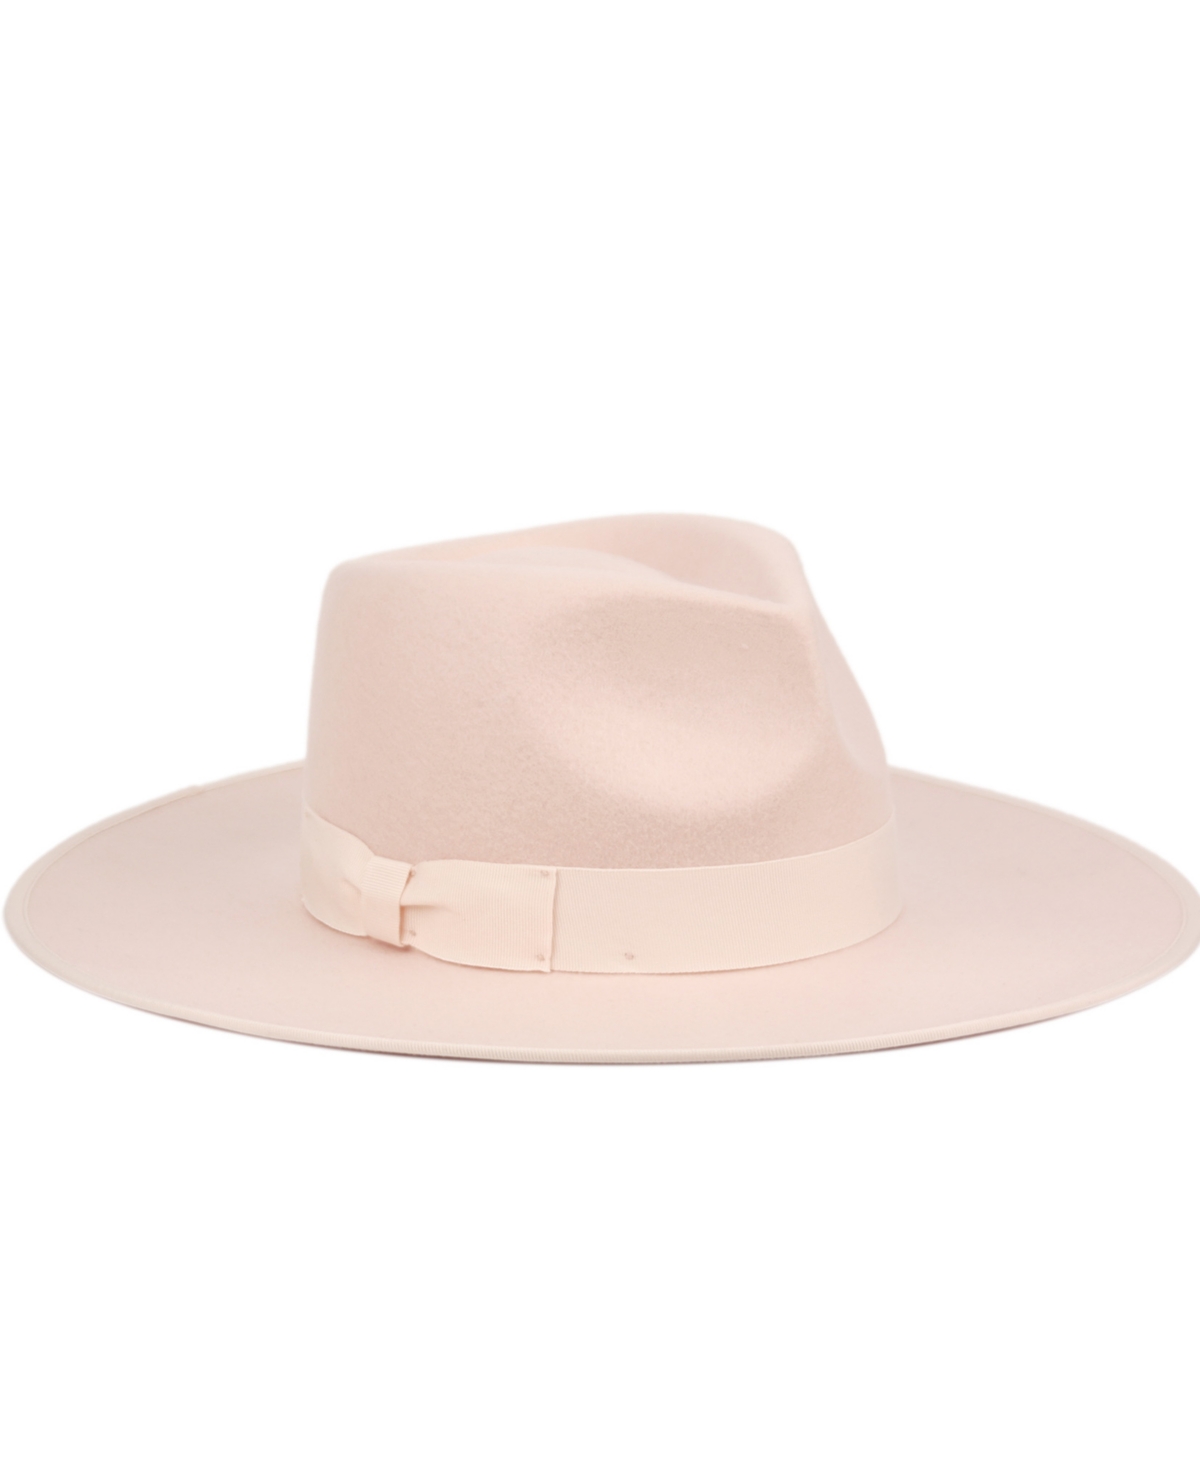 Angela & William Women's Wide Brim Felt Rancher Fedora Hat In Cream Pink